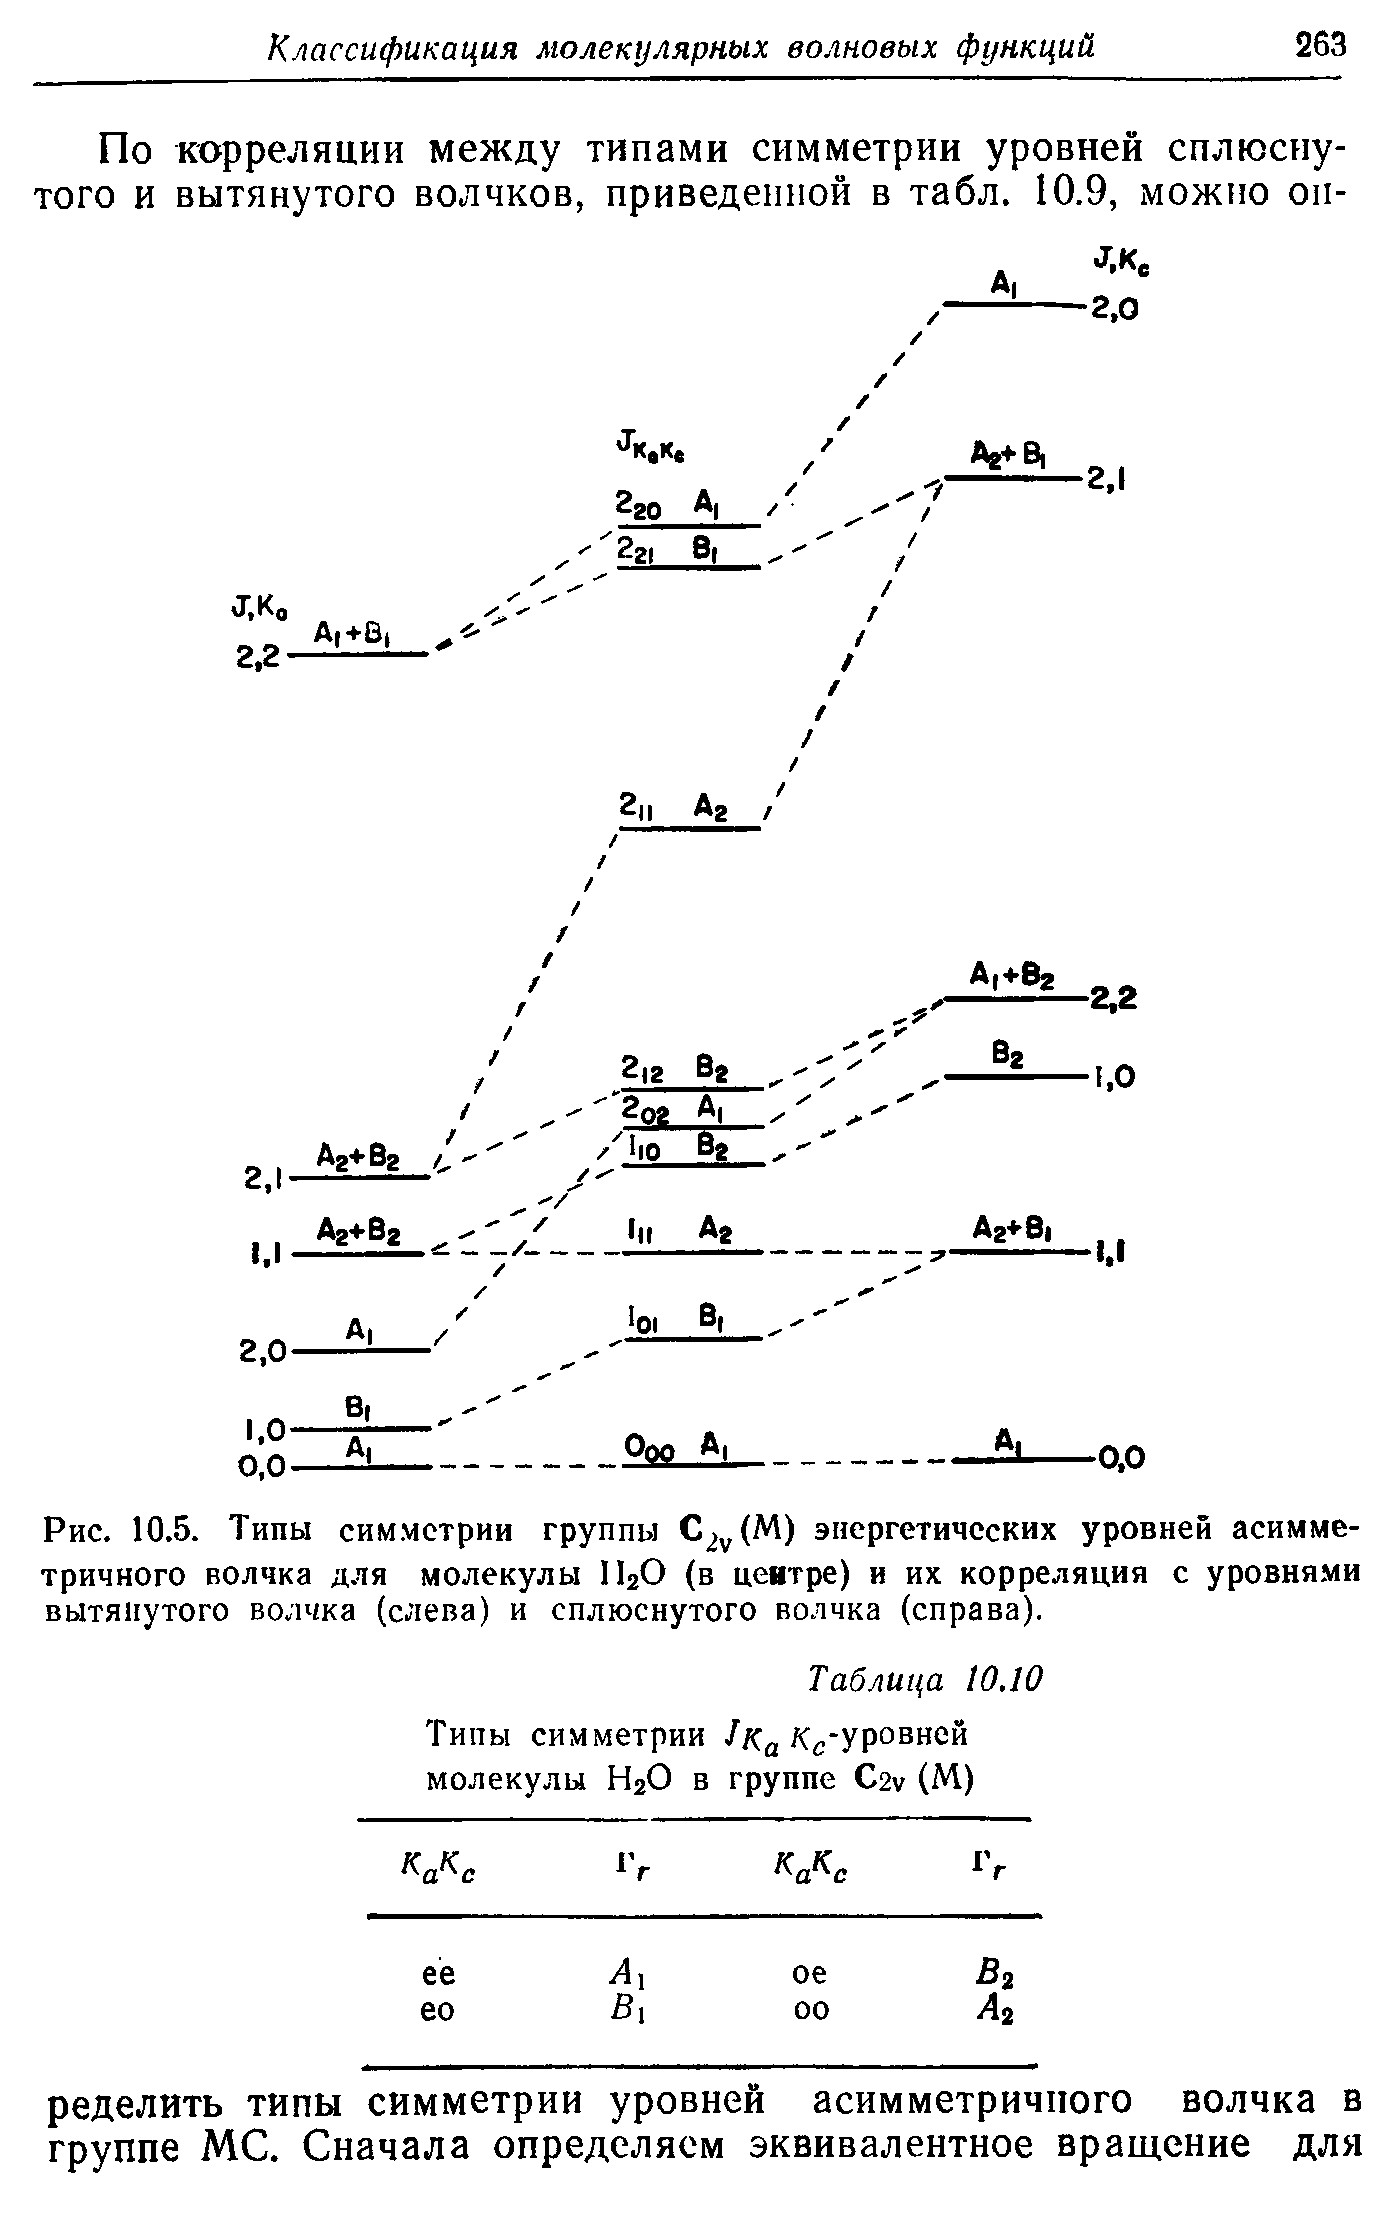 Рис. 10.5. <a href="/info/324653">Типы симметрии</a> группы С2 (М) энергетических уровней <a href="/info/323888">асимметричного волчка</a> Д.ЧЯ молекулы lIjO (в цеятре) и их корреляция с уровня.ми вытянутого волчка (слева) и сплюснутого волчка (справа).
